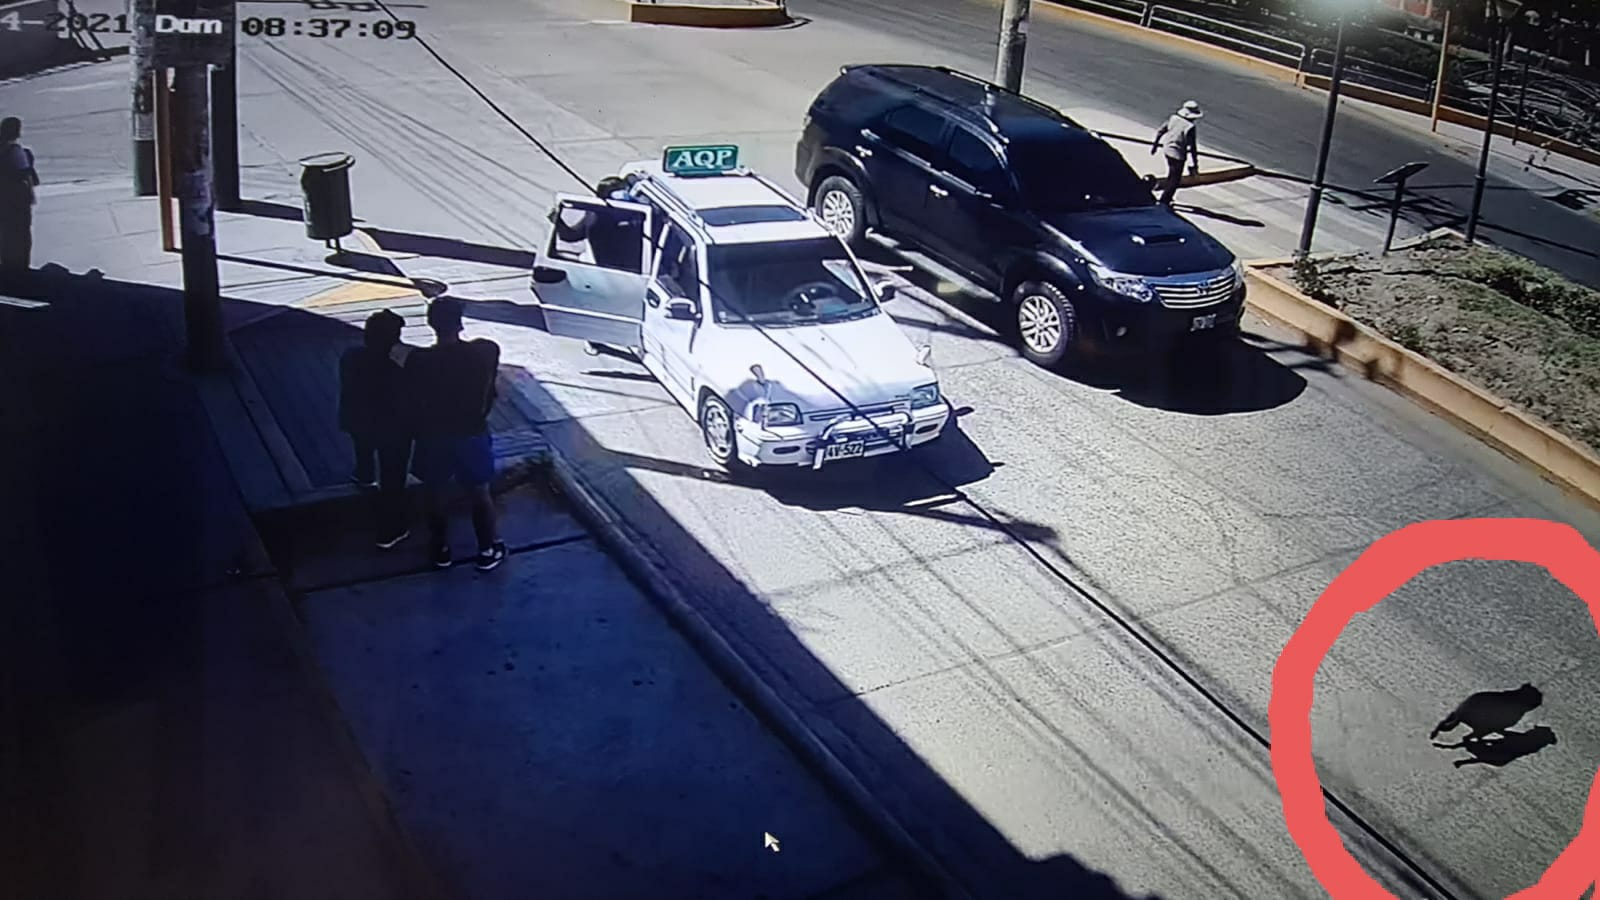 VIDEO. Perrito tuvo que ser sacrificado luego de ser atropellado por una camioneta en José Luis Bustamante y Rivero